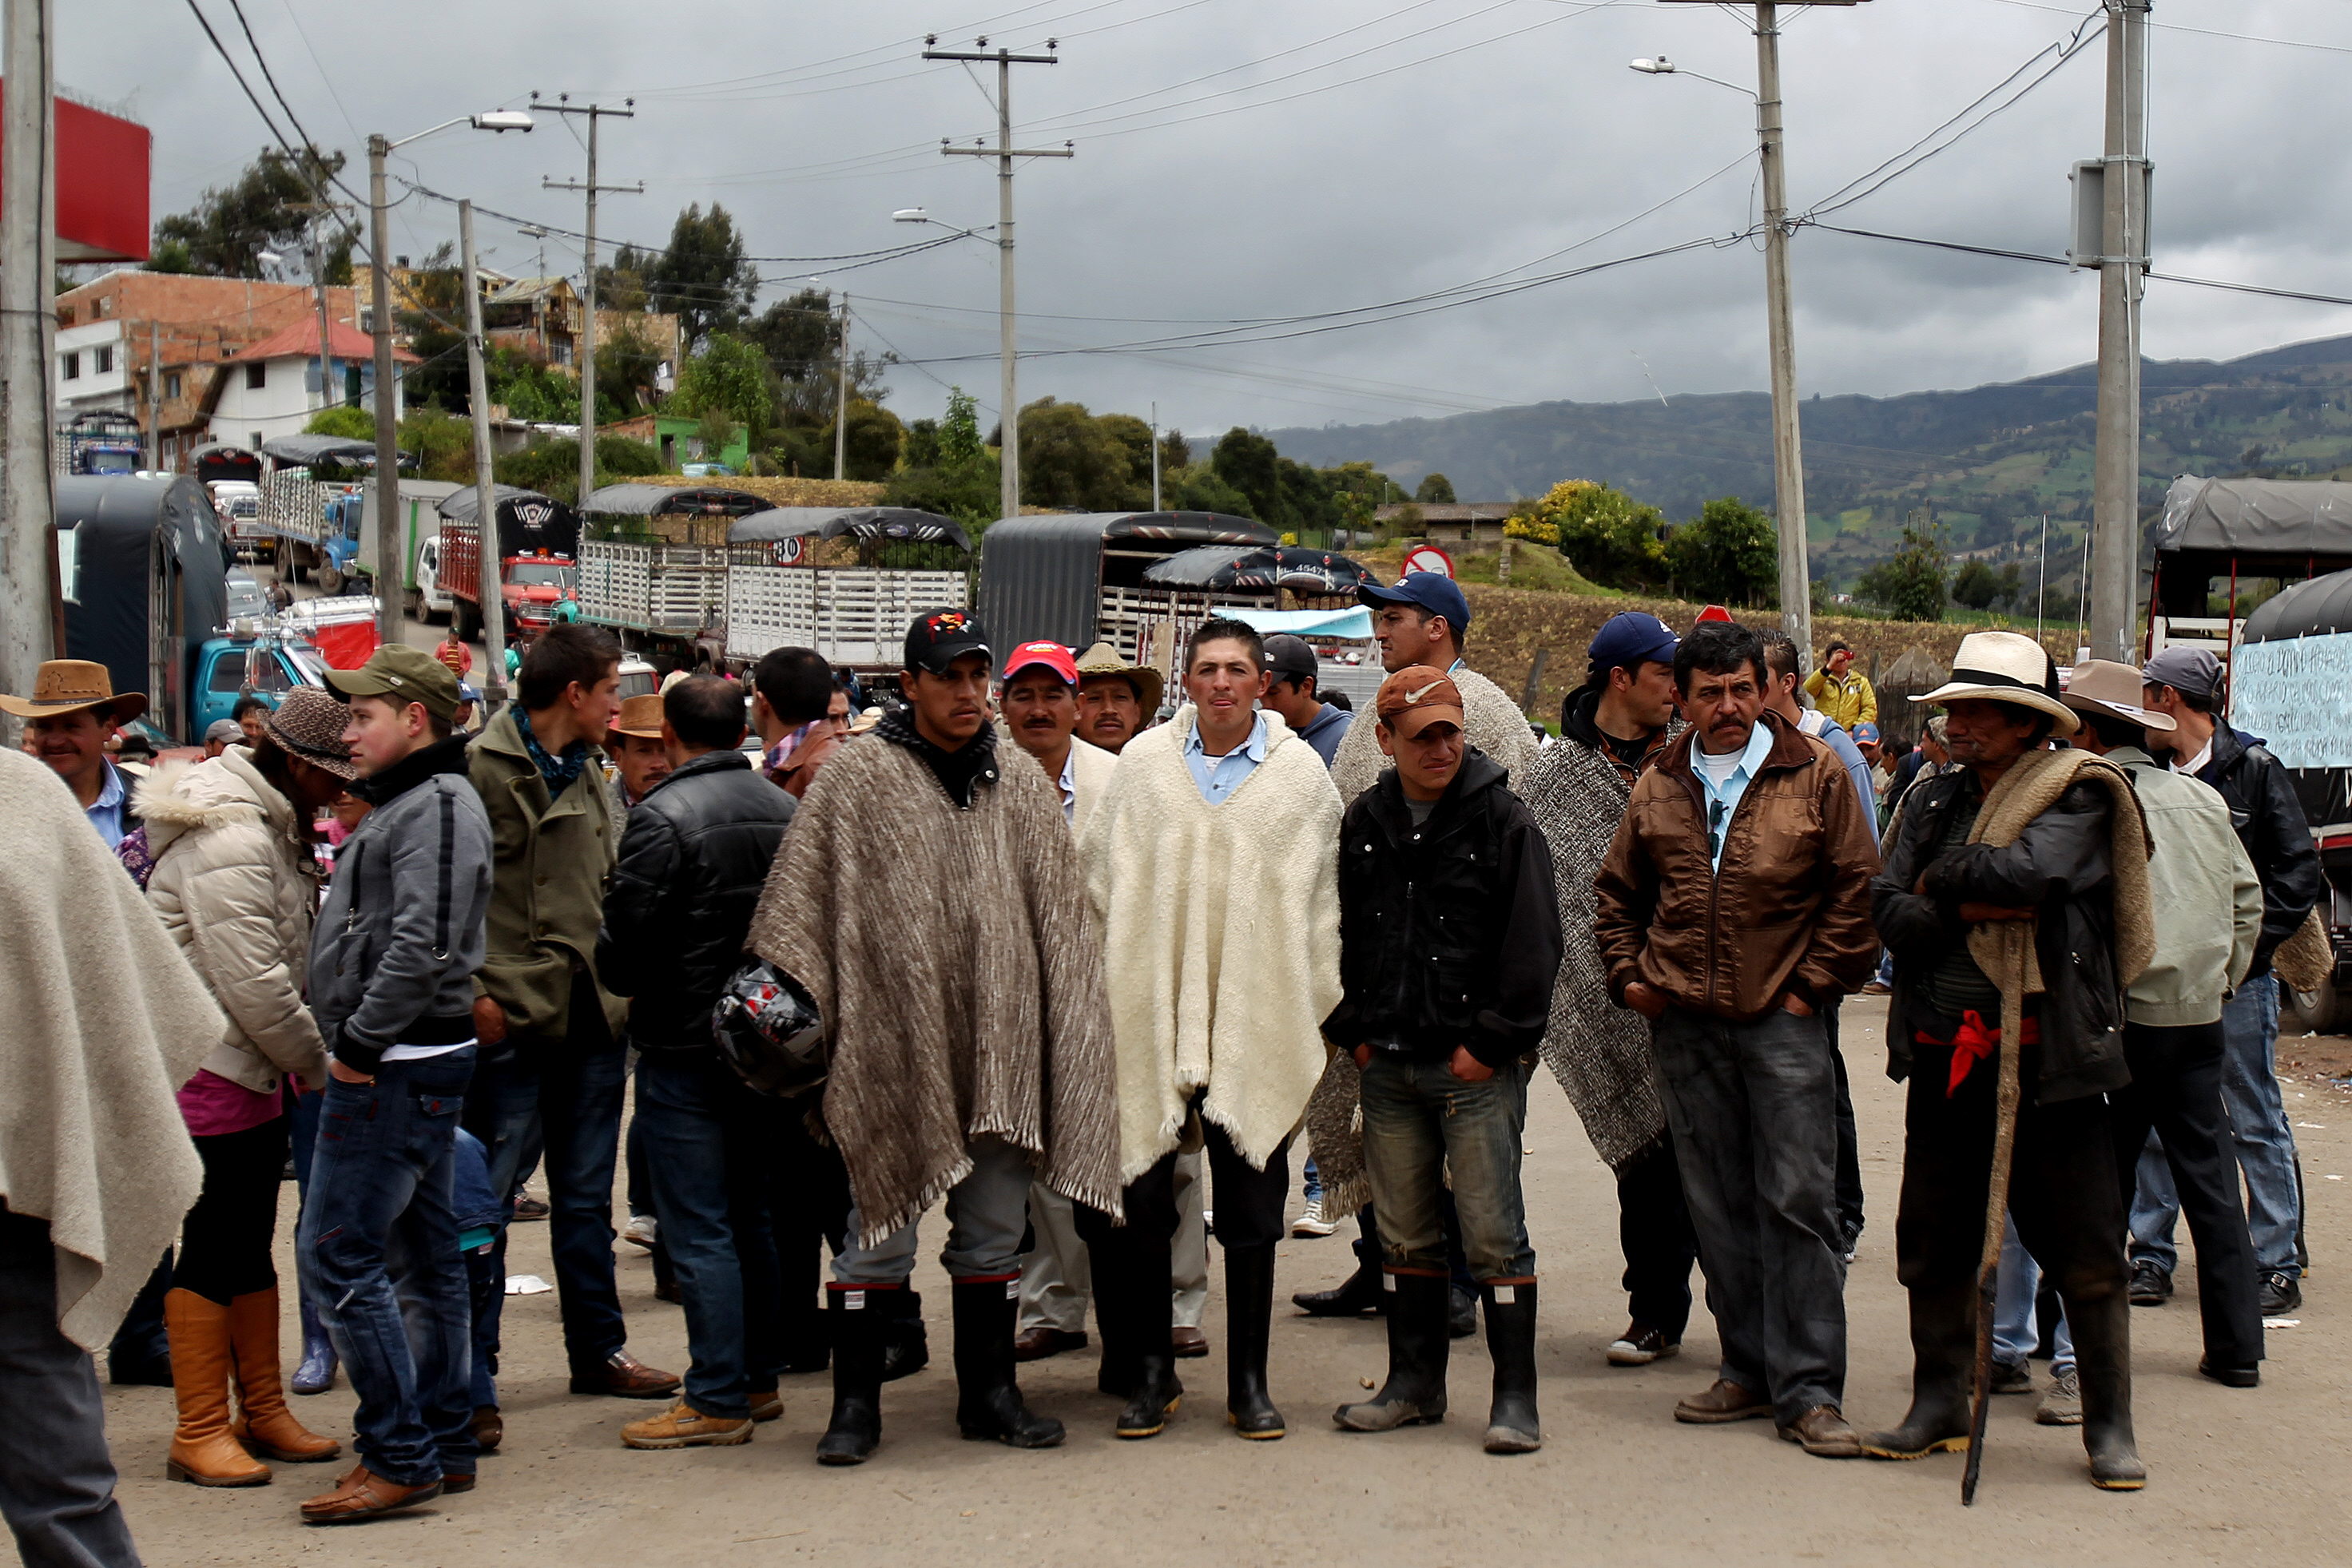 Los campesinos bloquearon la vía principal al municipio Ituango y las instalaciones de la Administración Municipal la mañana de este viernes para exigir acuerdos justos.